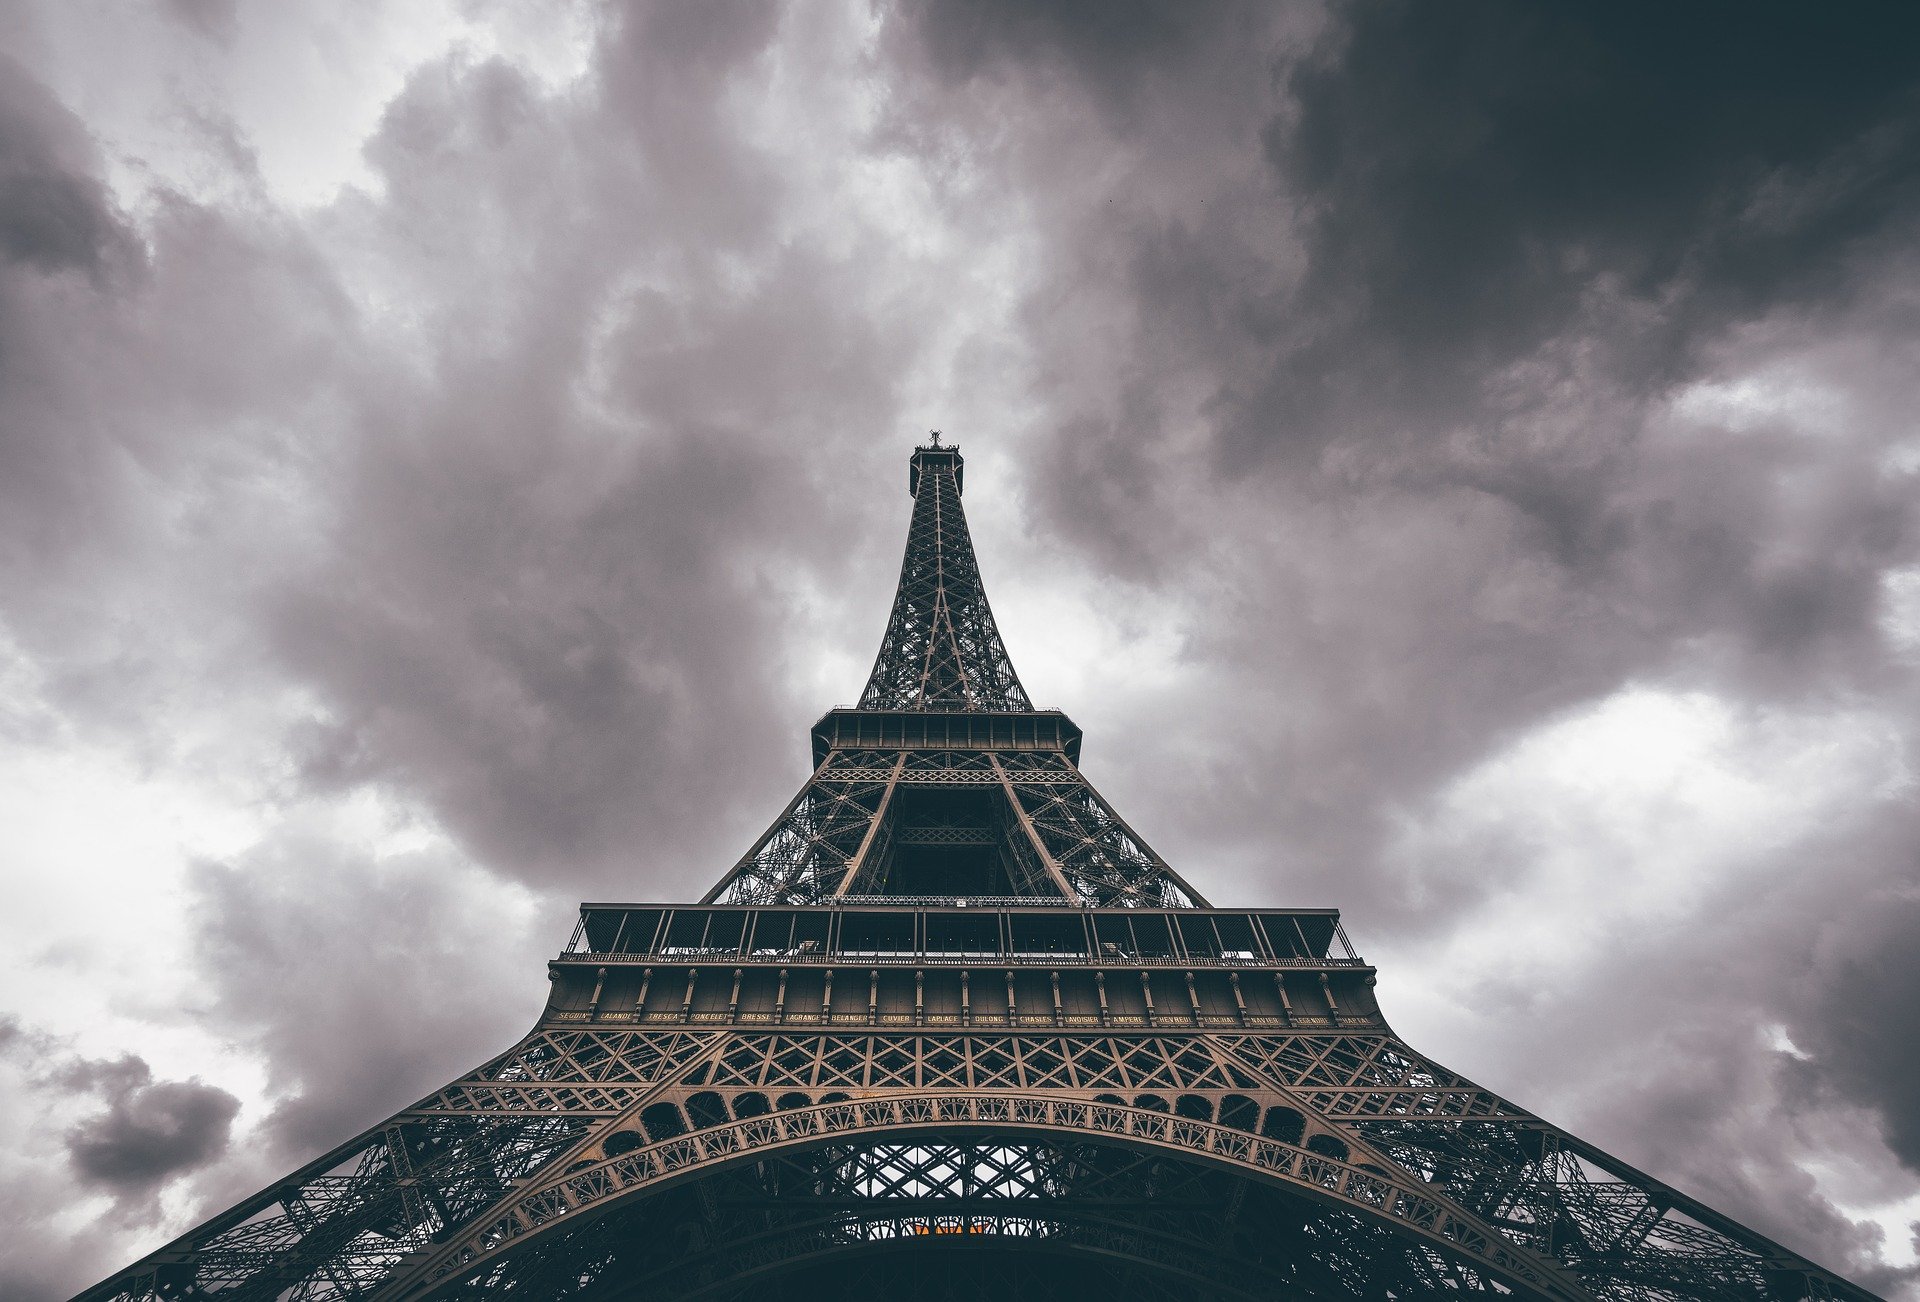 La torre Eiffel está oxidada, en mal estado: ¿puede llegar a caerse?